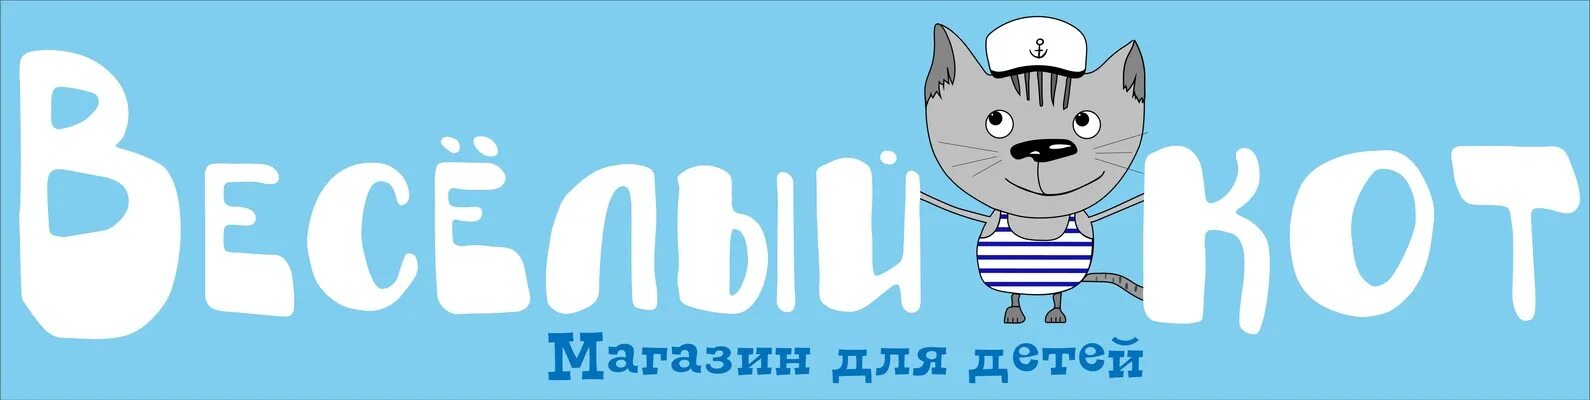 Веселый кот игрушки в орле. Весёлый кот магазин игрушек в Орле. Весёлый кот магазин. Логотип для магазина кот. Логотип веселый кот.